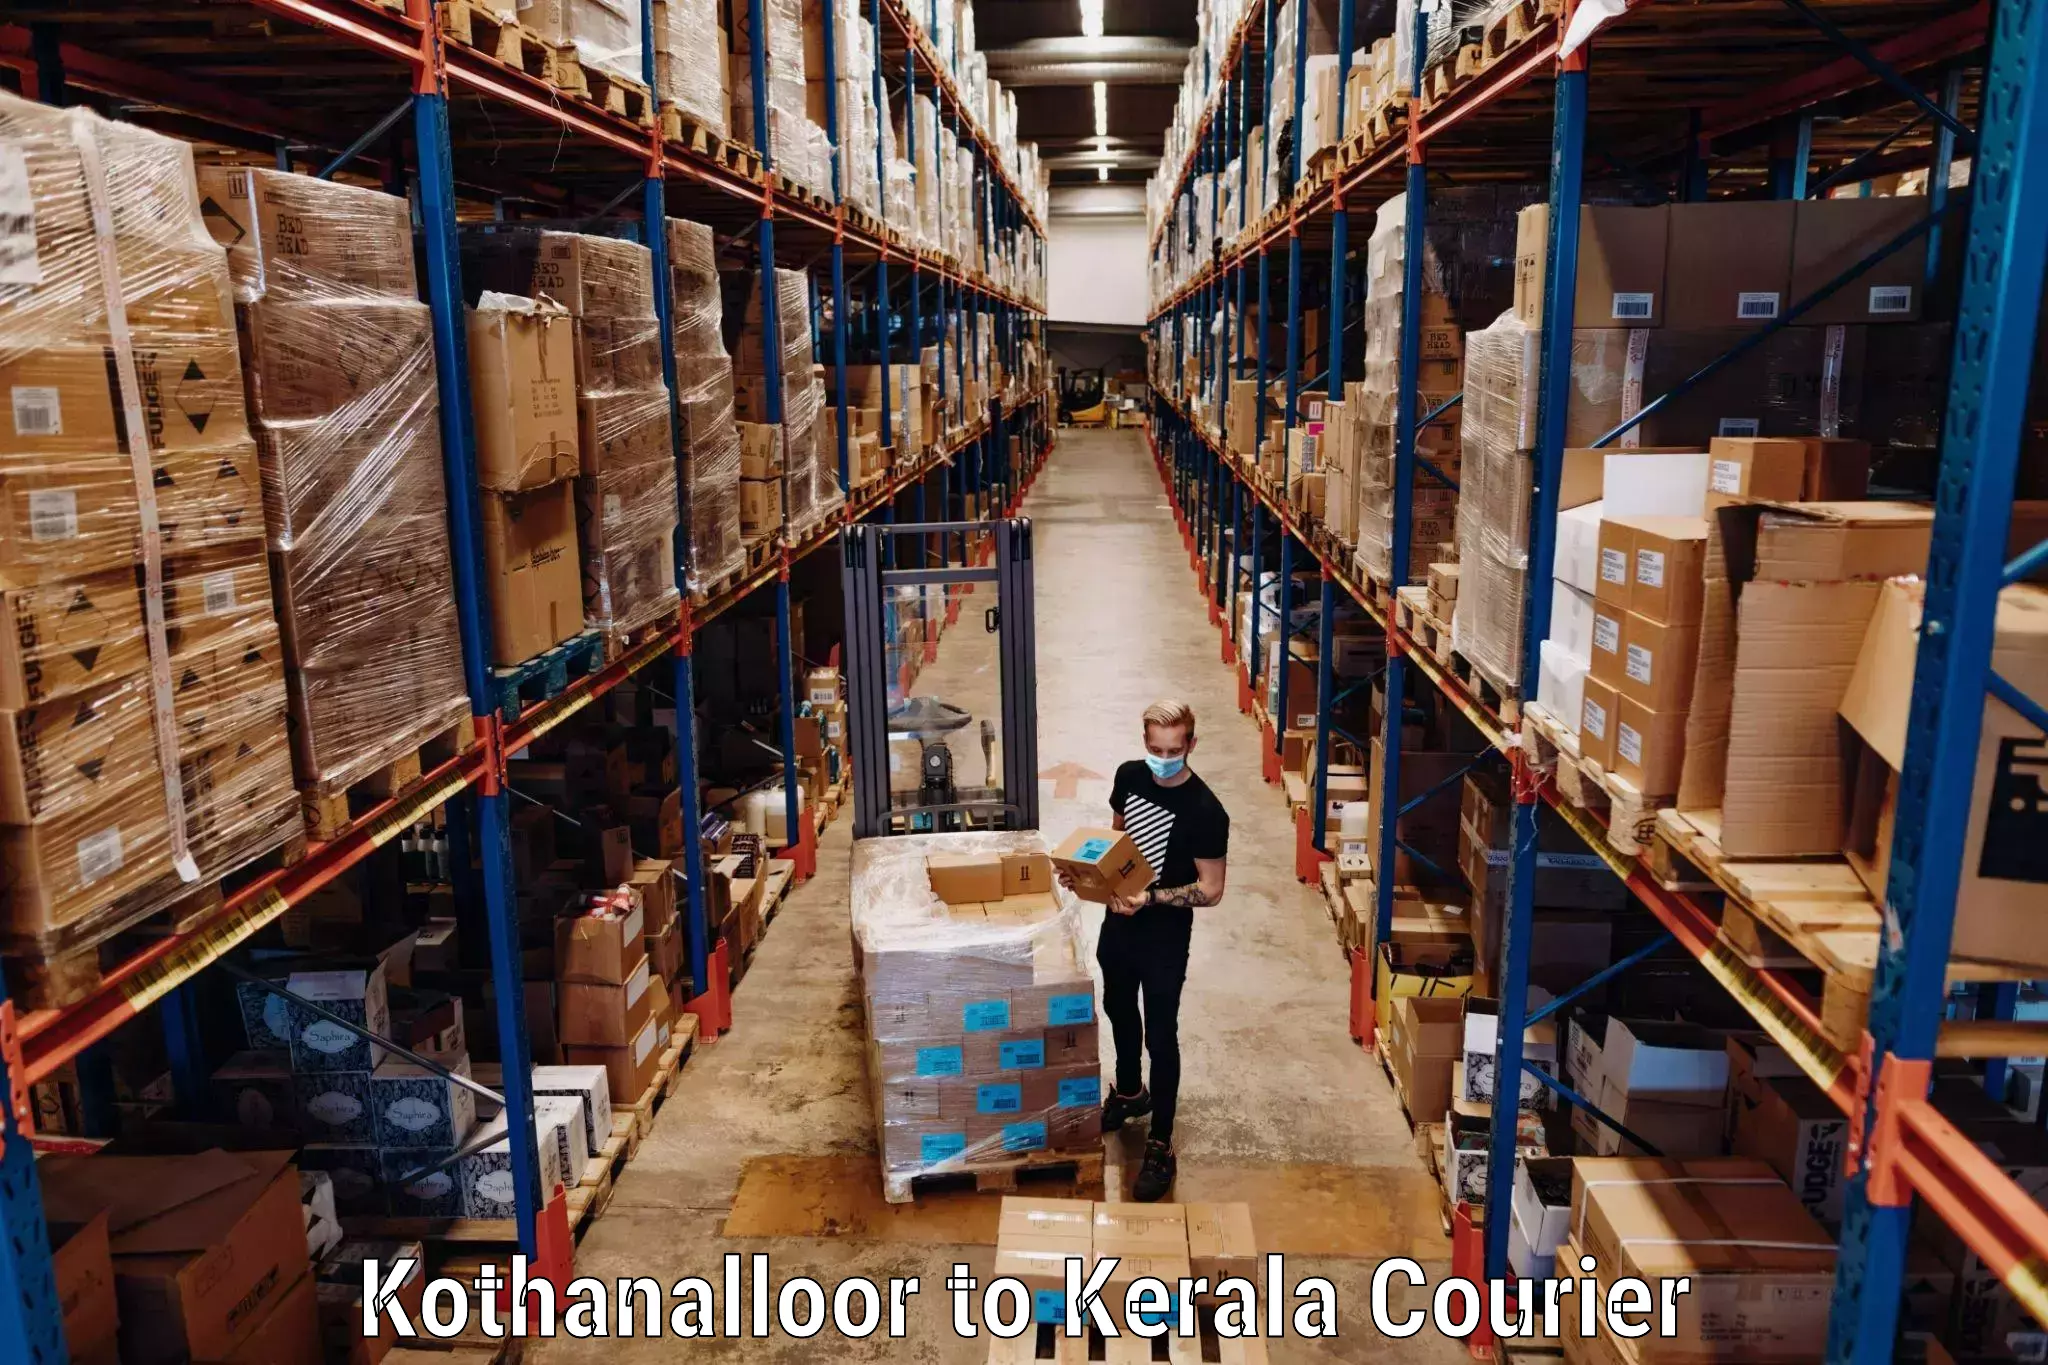 Baggage shipping rates calculator Kothanalloor to Palakkad